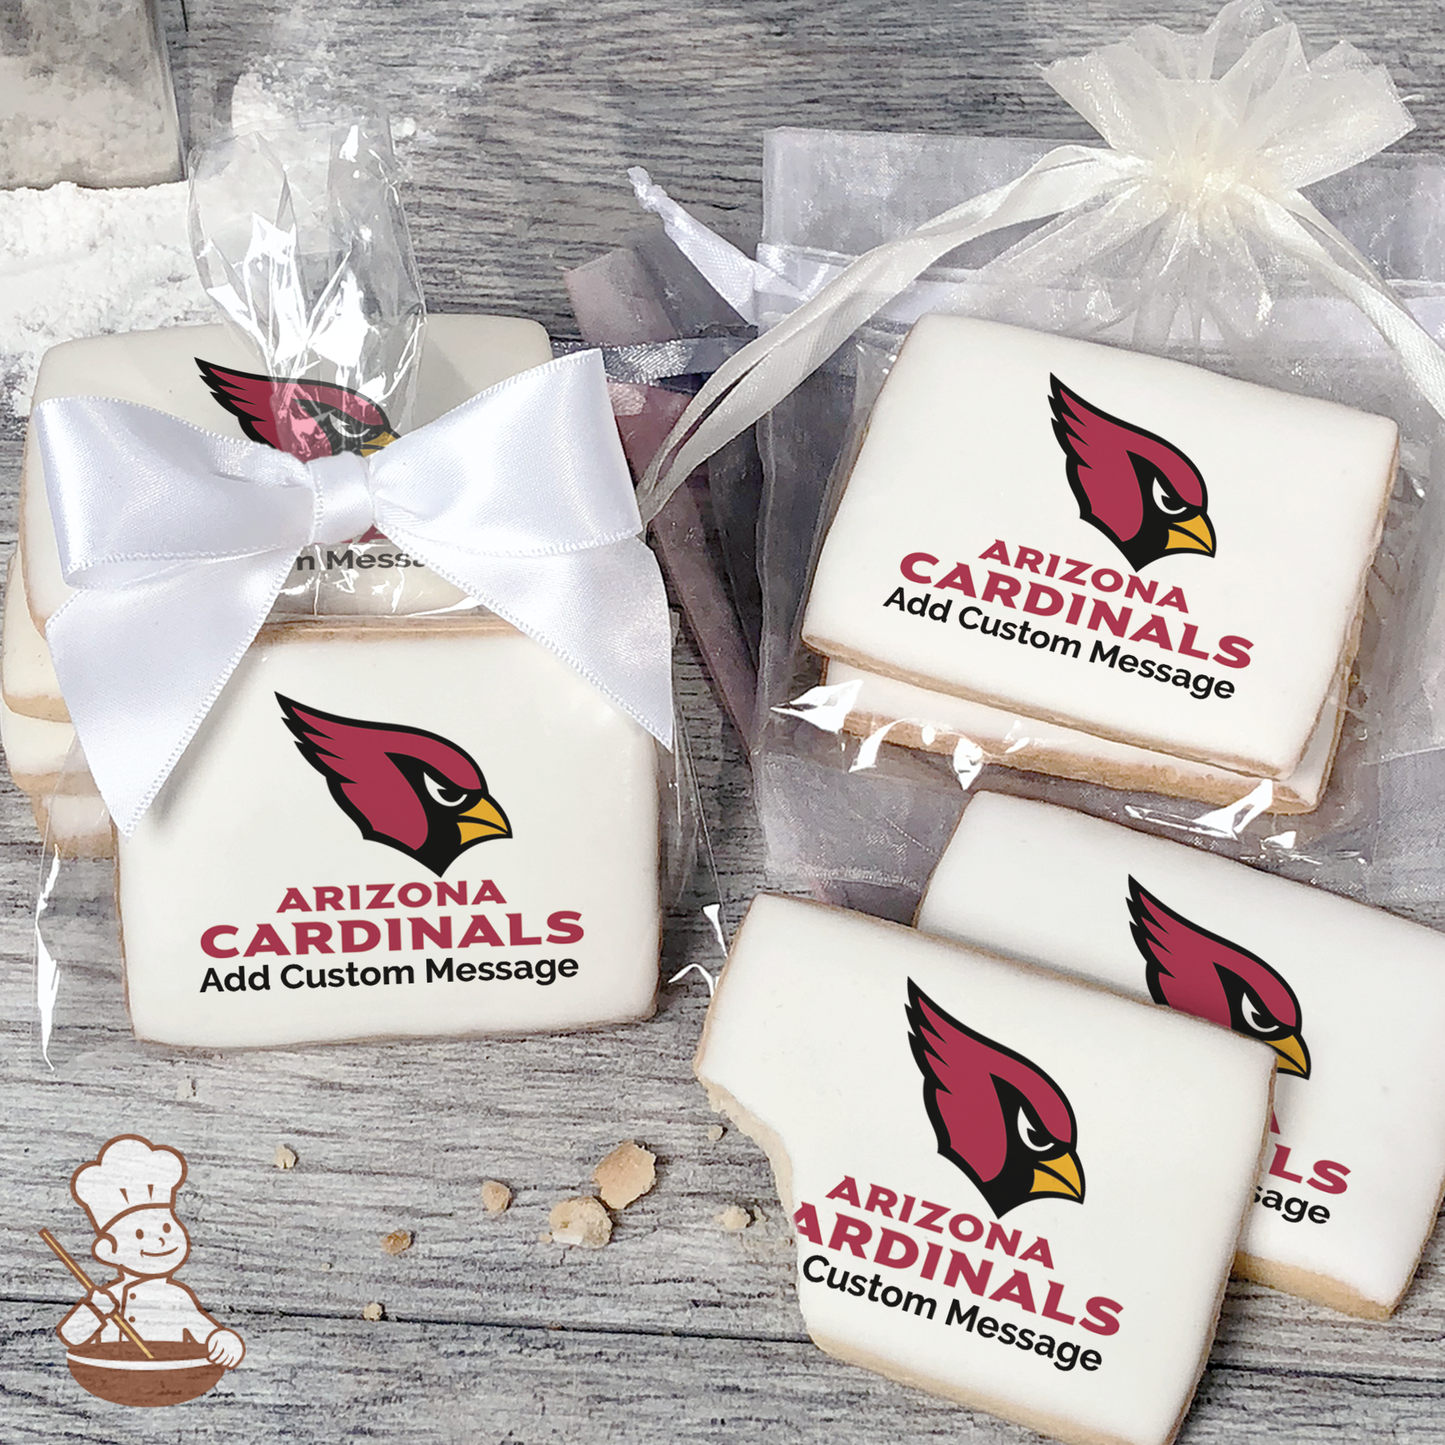 NFL Arizona Cardinals Custom Message Cookies (Rectangle)